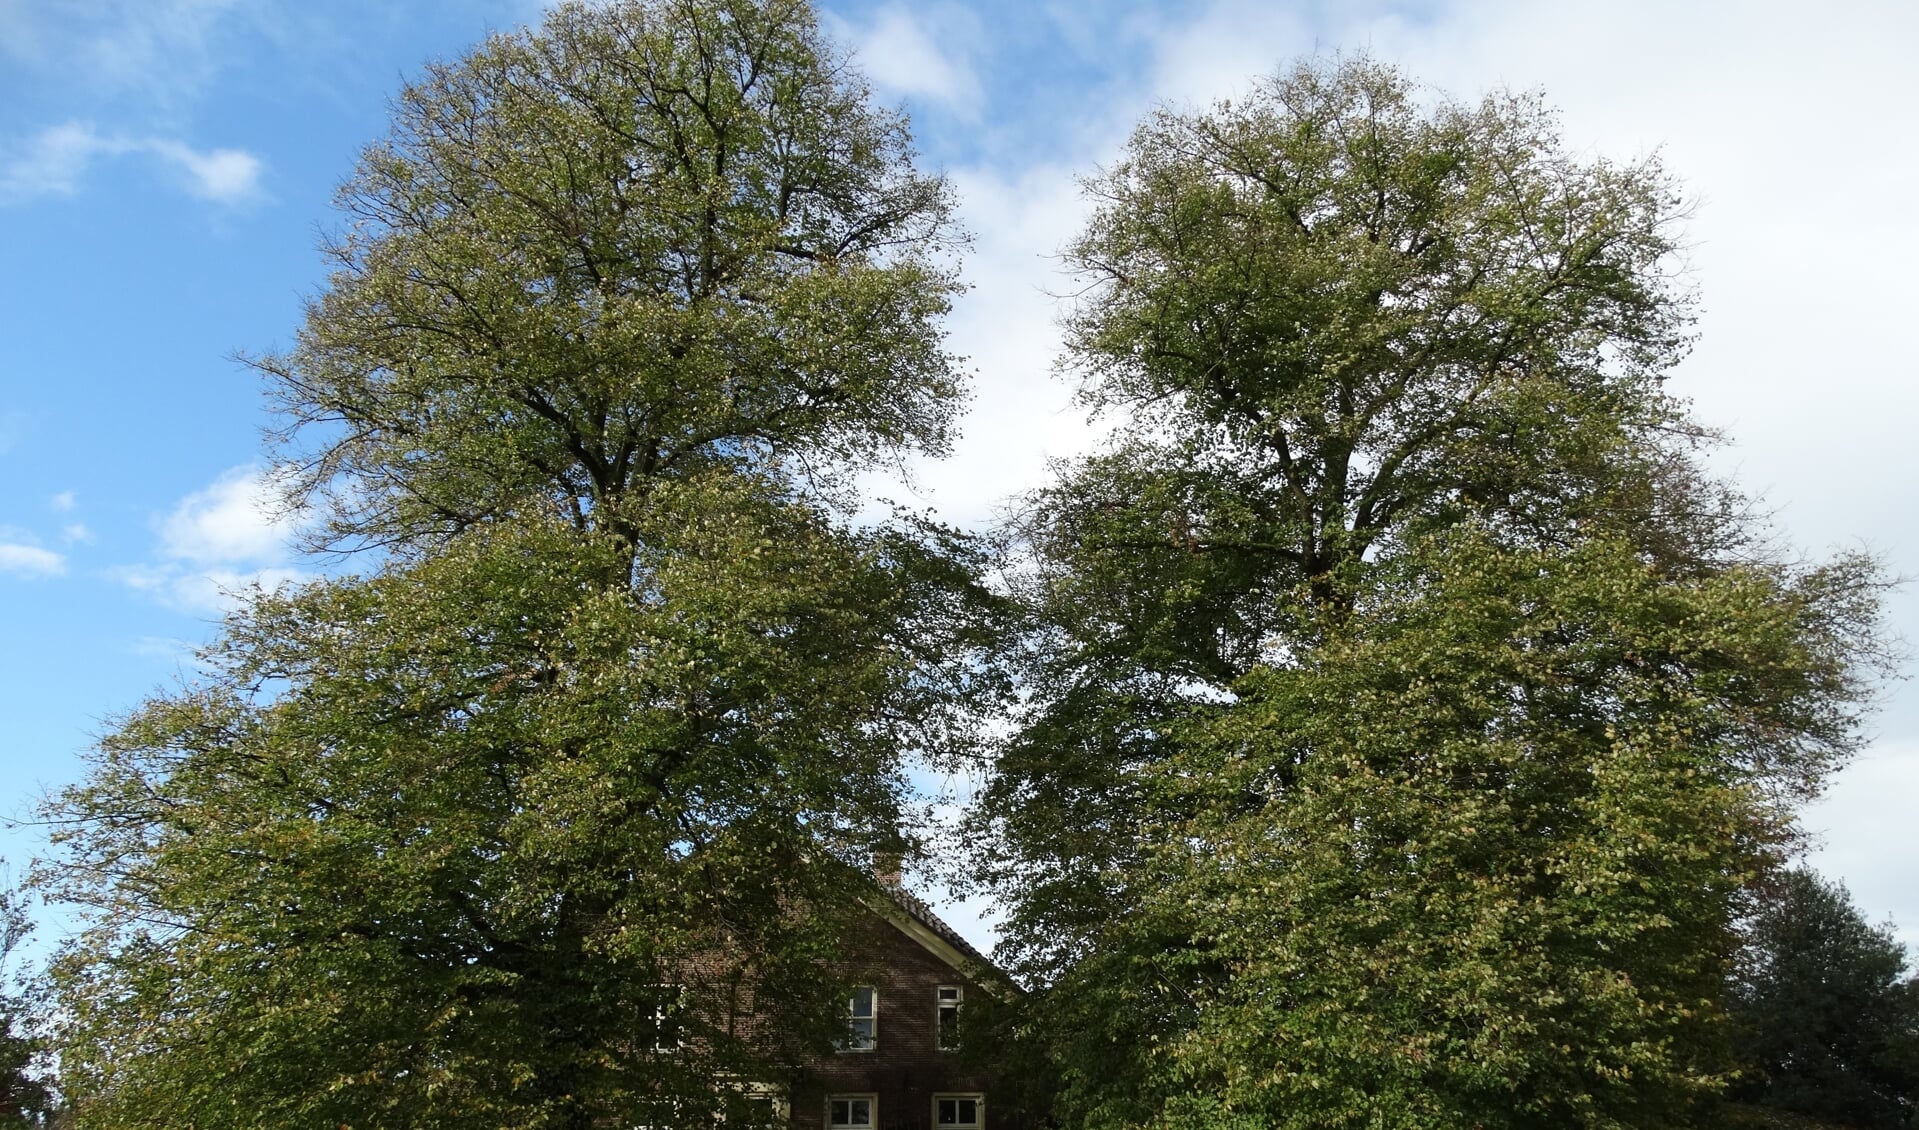 Deze twee Hollandse lindes zijn ook toegevoegd aan het Landelijk Register van Monumentale Bomen. De linkerboom is 24,5 meter hoog, de rechterboom 22 meter. De omtrek op 1.30 meter hoogte bedraagt respectievelijk 3.70 en 3.37 m. Deze lindes moeten ongeveer 130 jaar oud zijn. Foto: Gerlinde Bulten